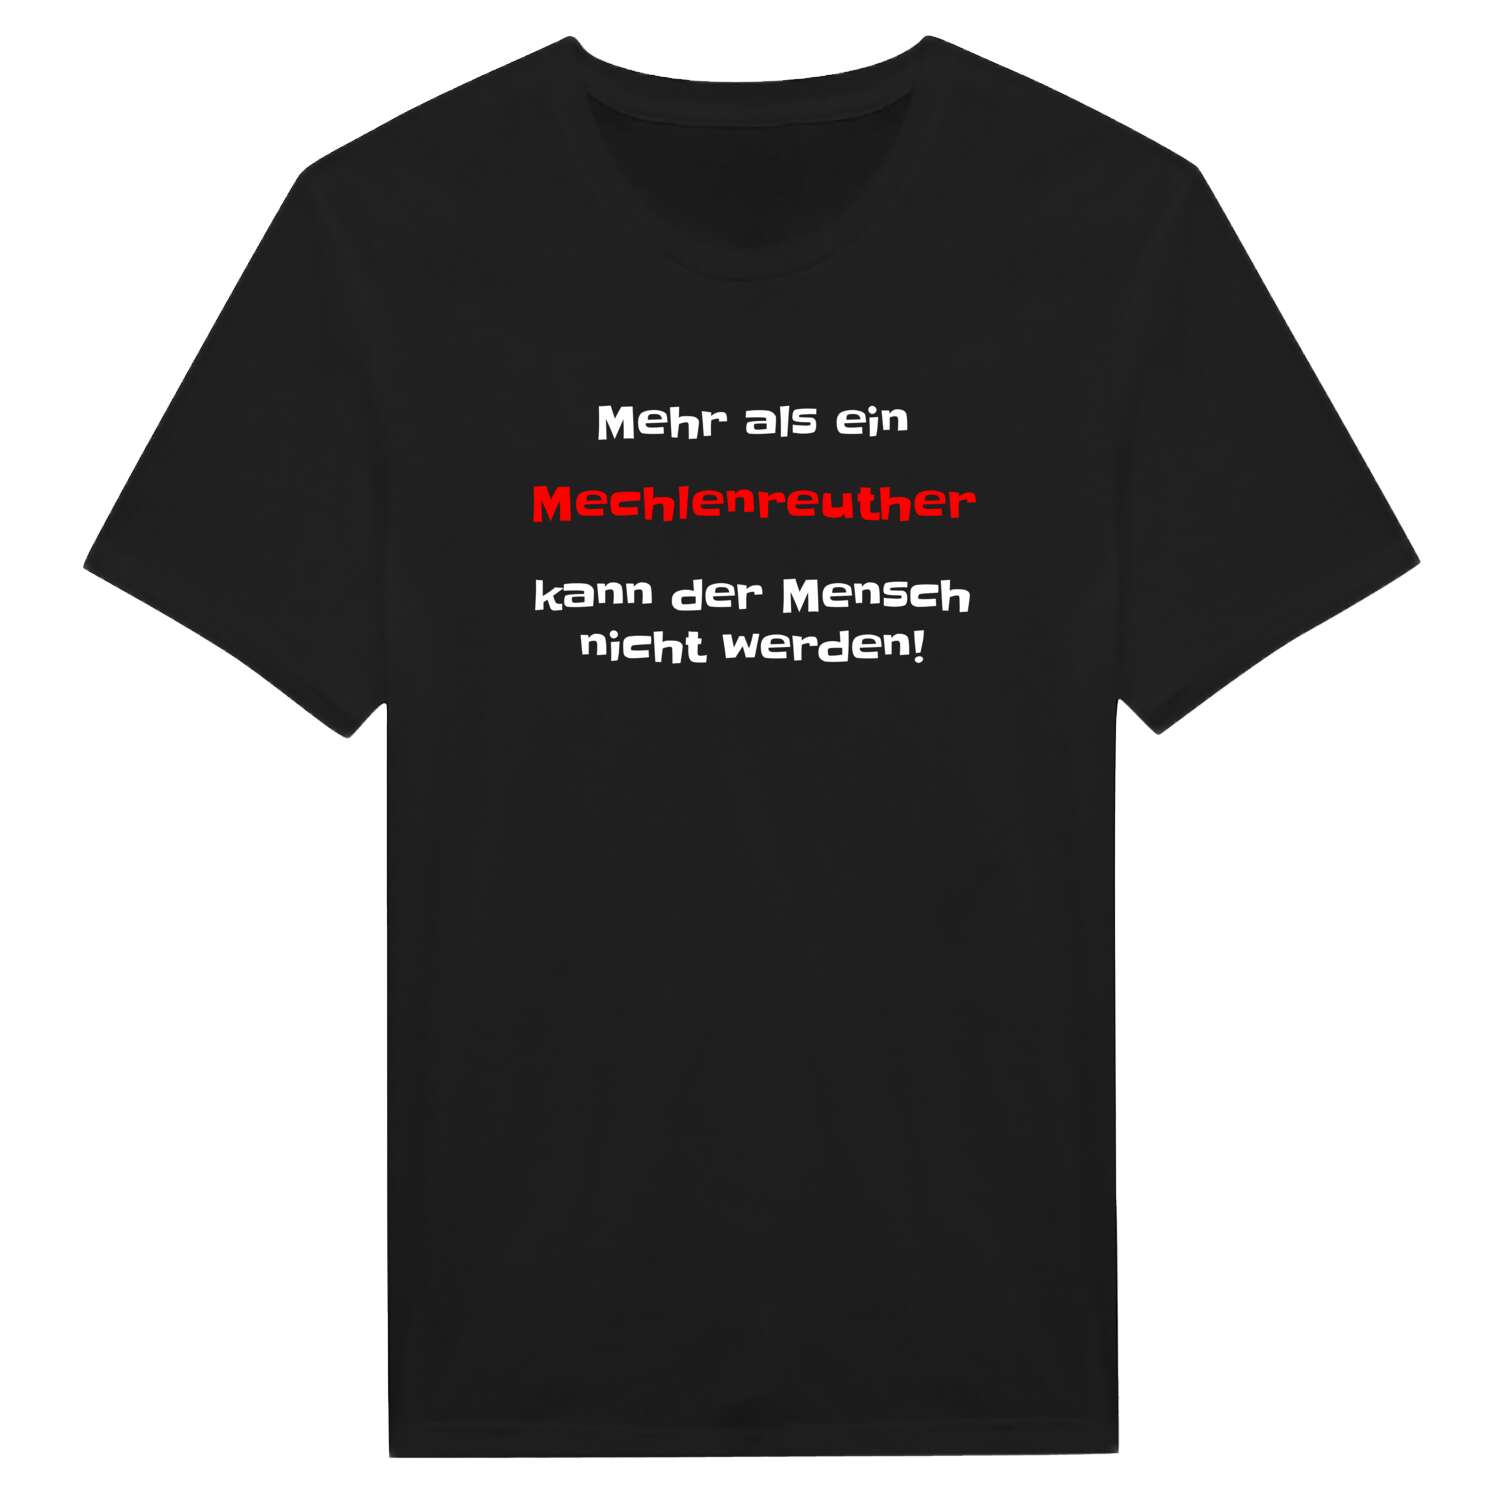 Mechlenreuth T-Shirt »Mehr als ein«